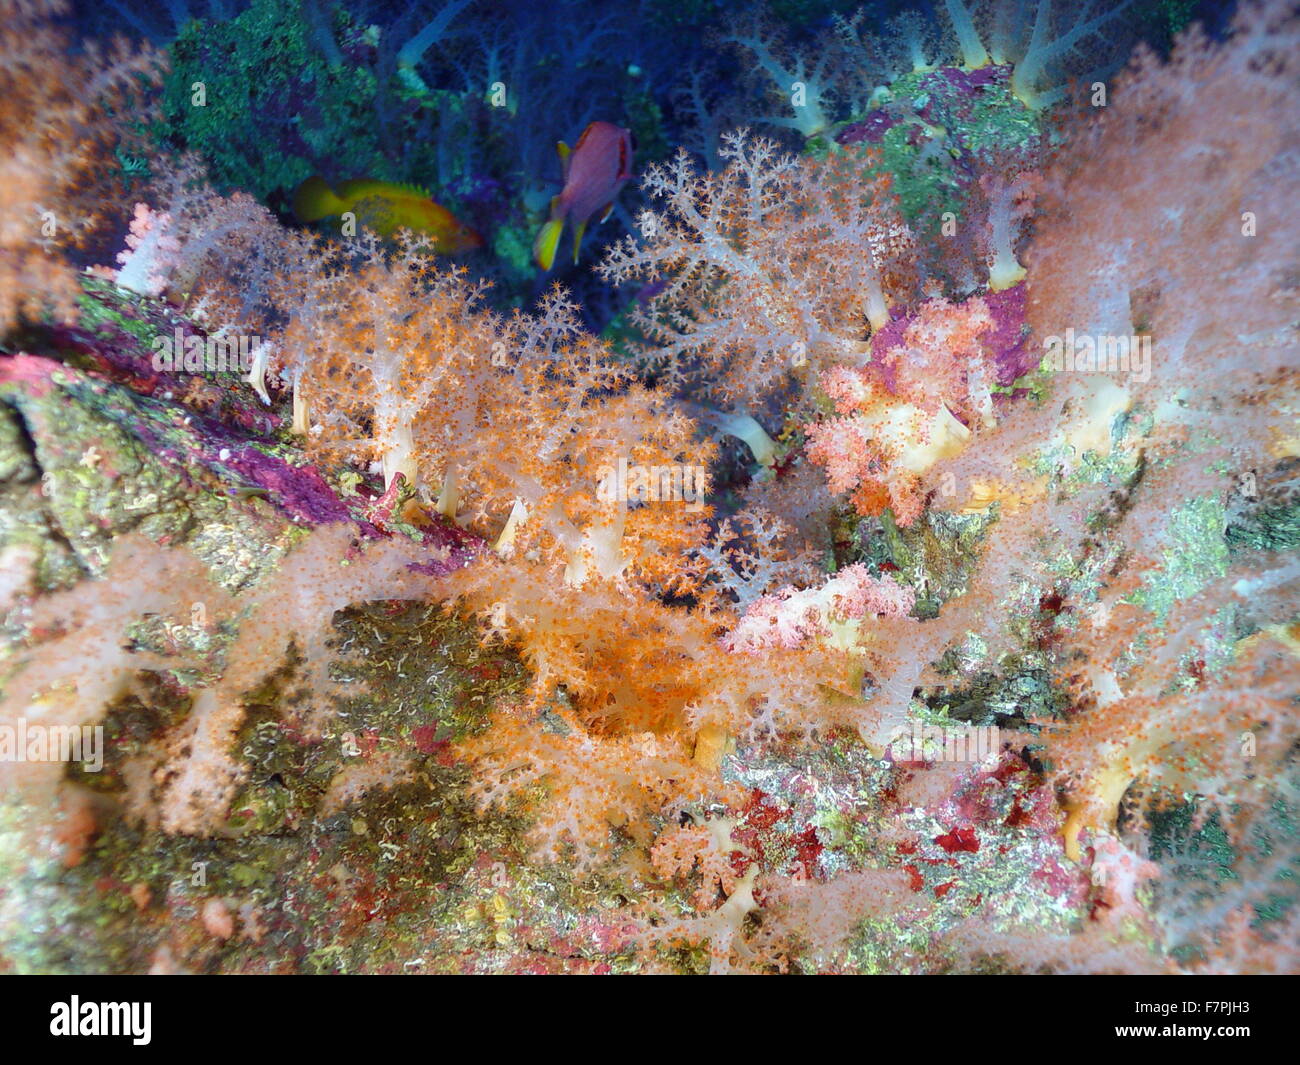 Bunte tropische Fische, Weichkorallen und Korb-Stars auf der Spitze einer vulkanische Wirbelsäule. Aus der Region Mariana Arc, westlichen Pazifischen Ozean. Vom Jahr 2004 Stockfoto